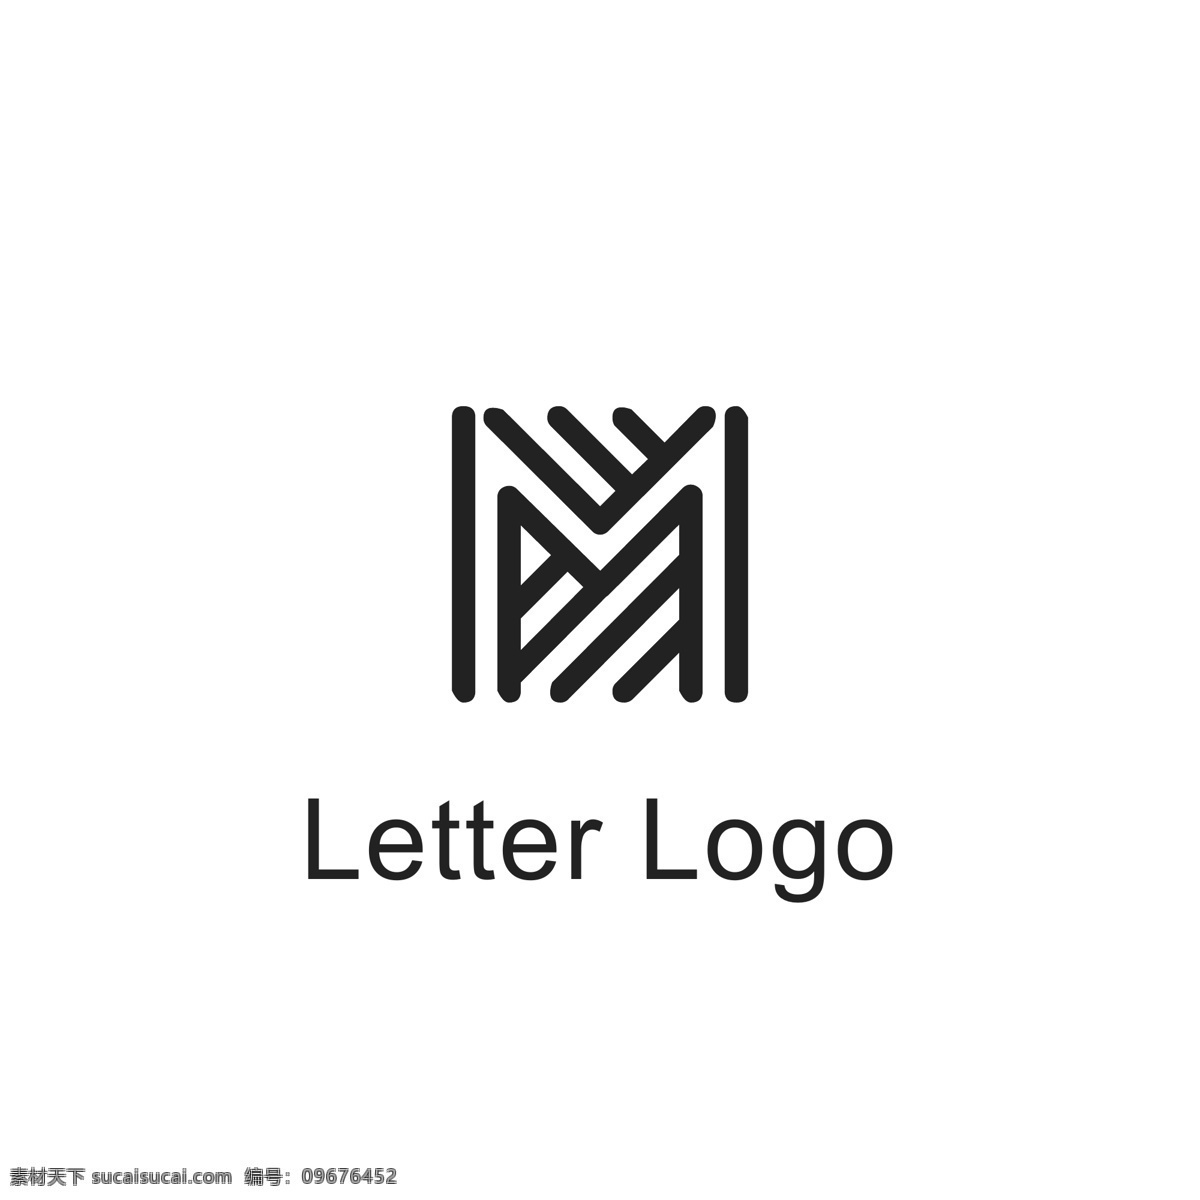 字母 变形 logo 字母logo 字母m 字母变形 线条logo 几何logo logo设计 标识设计 标志设计 ai矢量